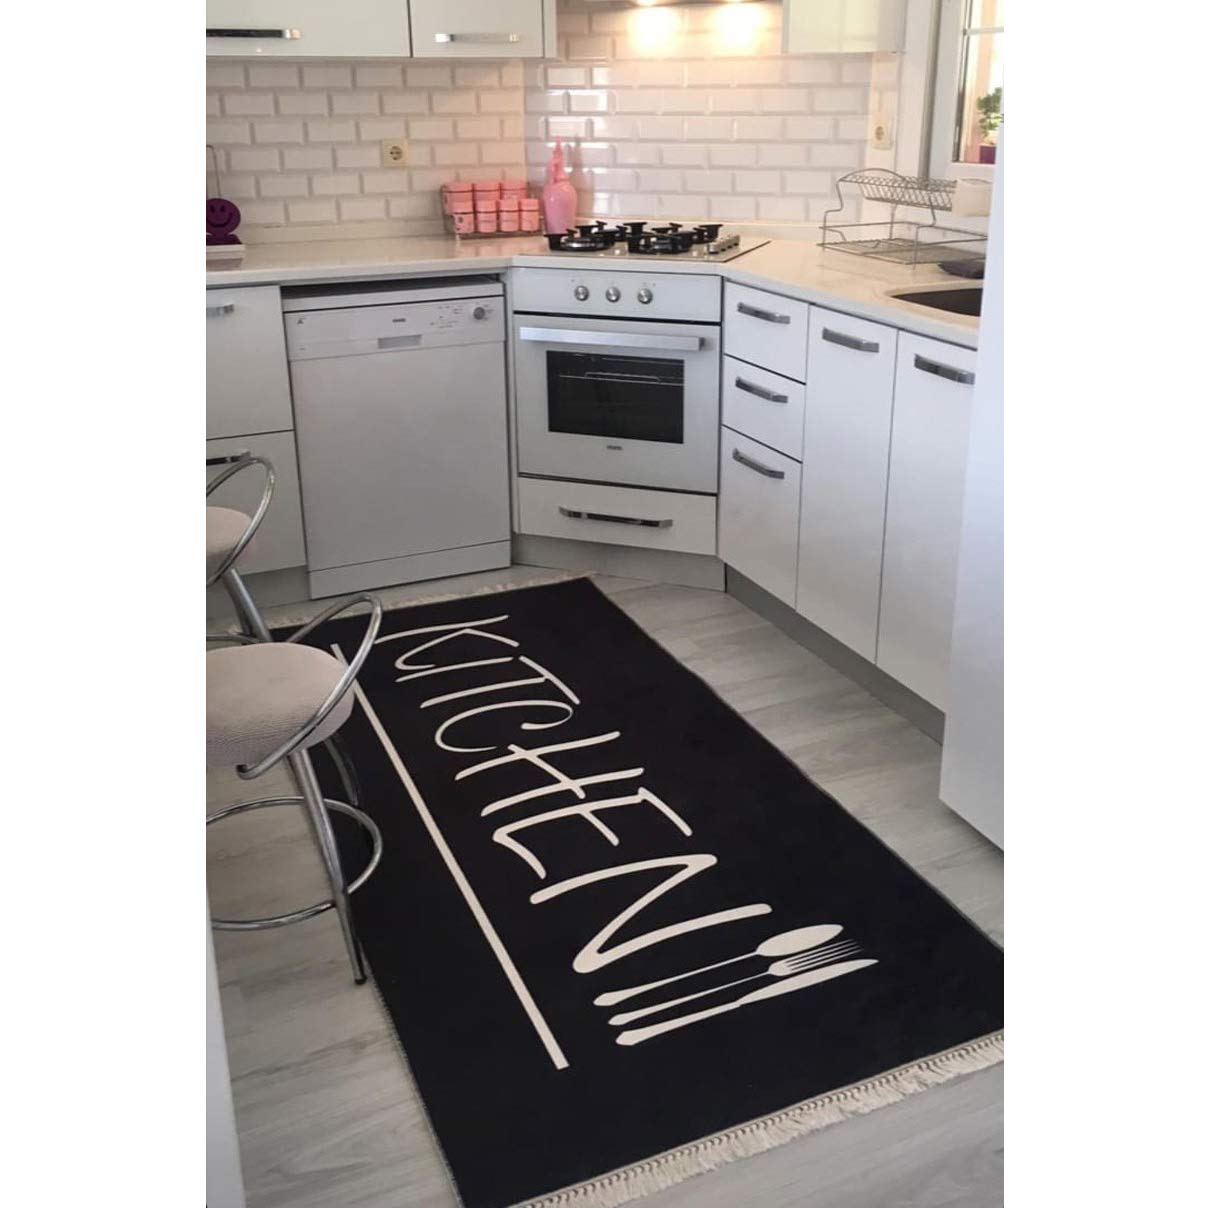 فرش ماشینی کلکسیون مدرن طرح آشپزخانه کد K 0006